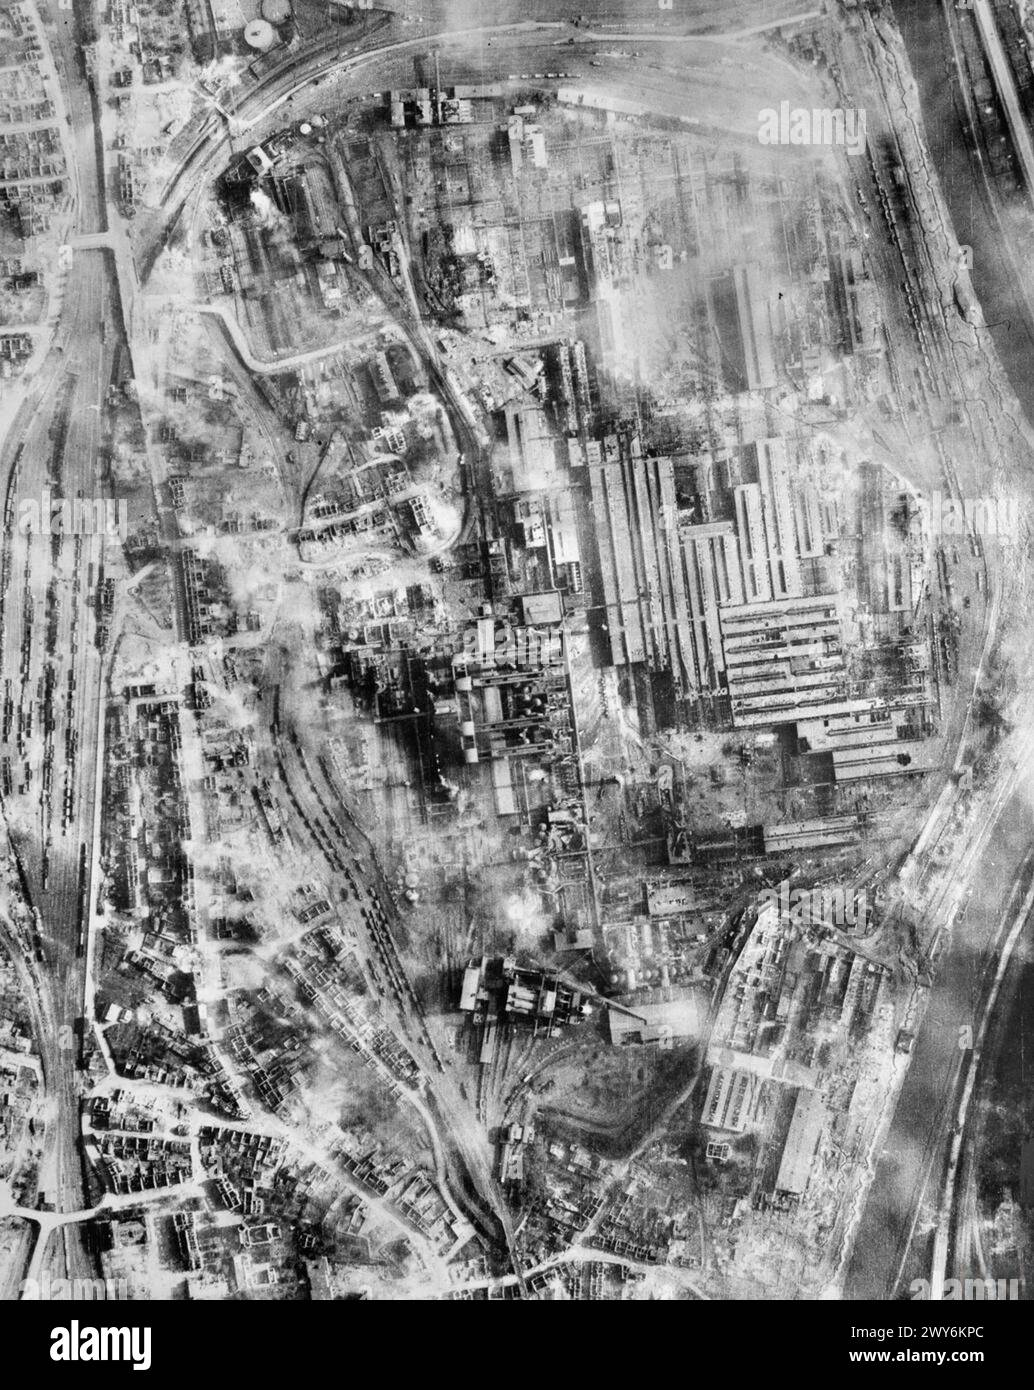 ROYAL AIR FORCE: OPERATIONEN DER FOTOGRAFISCHEN AUFKLÄRUNGSEINHEITEN, 1939-1945. - Vertikale fotografische Aufklärungsaufklärung, aufgenommen nach dem Angriff von Flugzeugen der Gruppen 1, 3 und 8, Bomber Command, auf Saarbrücken, Deutschland, in der Nacht vom 5/6. Oktober 1944. Hohe Sprengstoff- und Brandbomben haben das Stahlwerk der Vereinigten Huttenwerke Burbach-Eichdudlingen stark beschädigt. , Royal Air Force, Gruppe 106, Royal Air Force, Wing, 1, Royal Air Force, 3 Gruppen, Royal Air Force, Gruppe, 88 Stockfoto